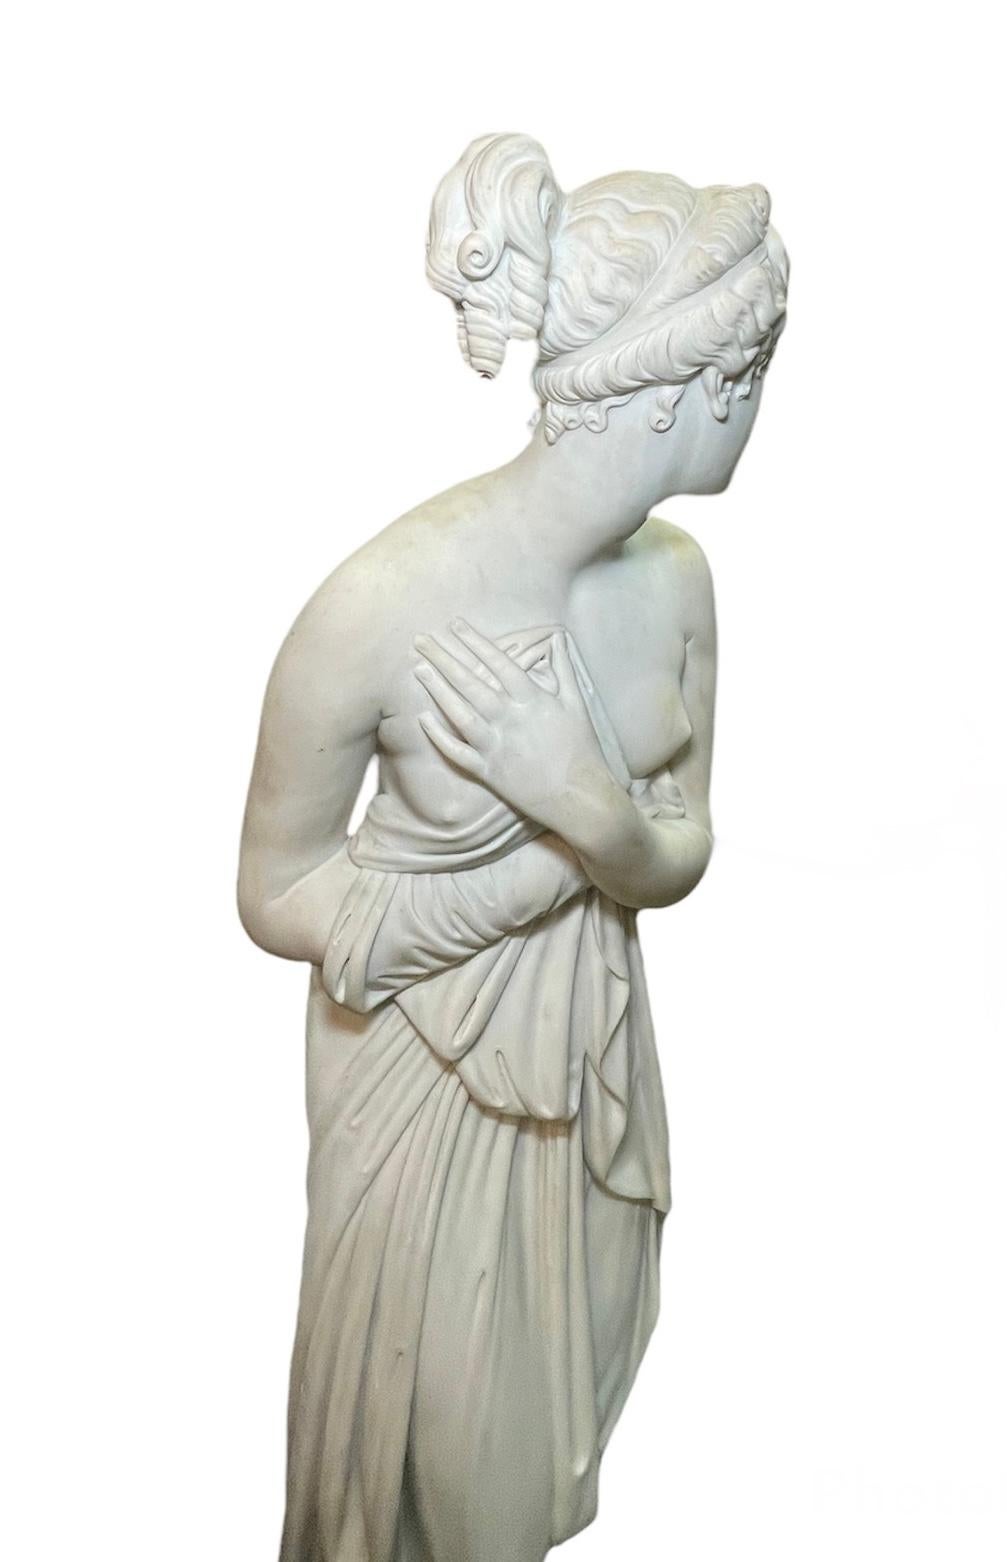 Il s'agit d'une sculpture en marbre grandeur nature de Vénus d'après la sculpture 